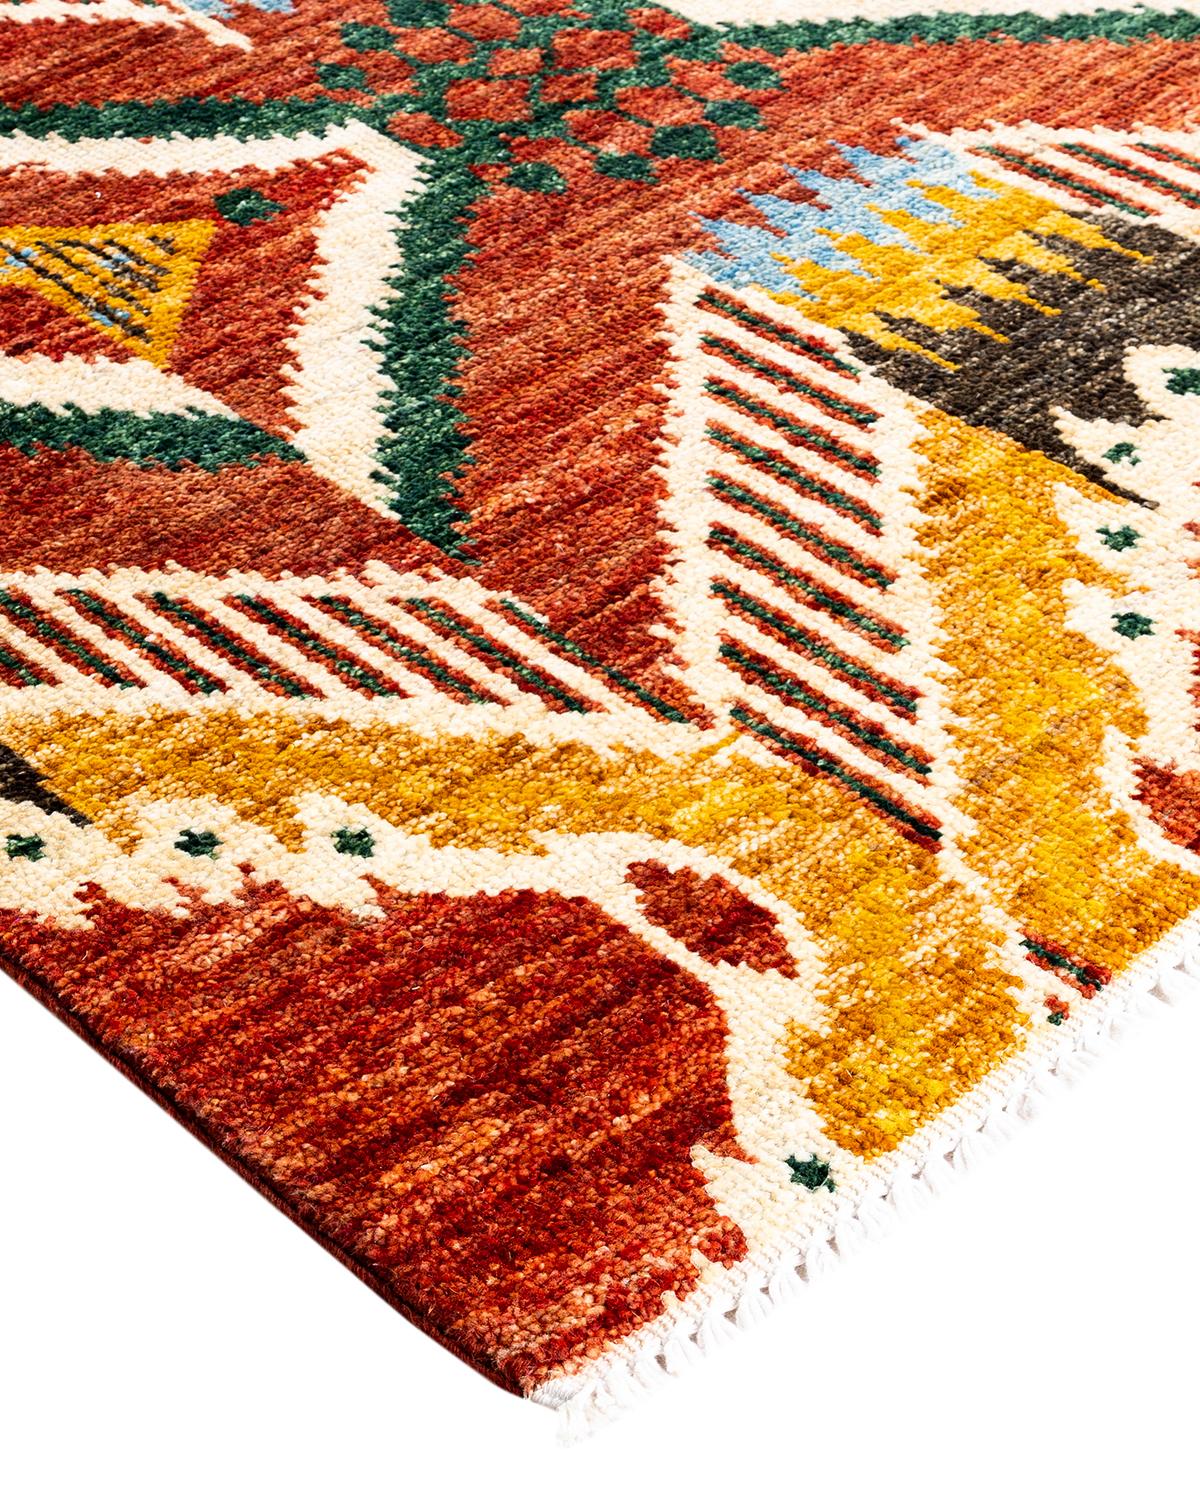 Die akribische Kunst der handgestickten Textilien usbekischer Stämme inspirierte die Suzani Collection'S. Kräftige Motive, vor allem Granatäpfel, Sonne und Mond, sind häufige Elemente, deren einfache, aber überzeugende Designs in Wolle und Seide